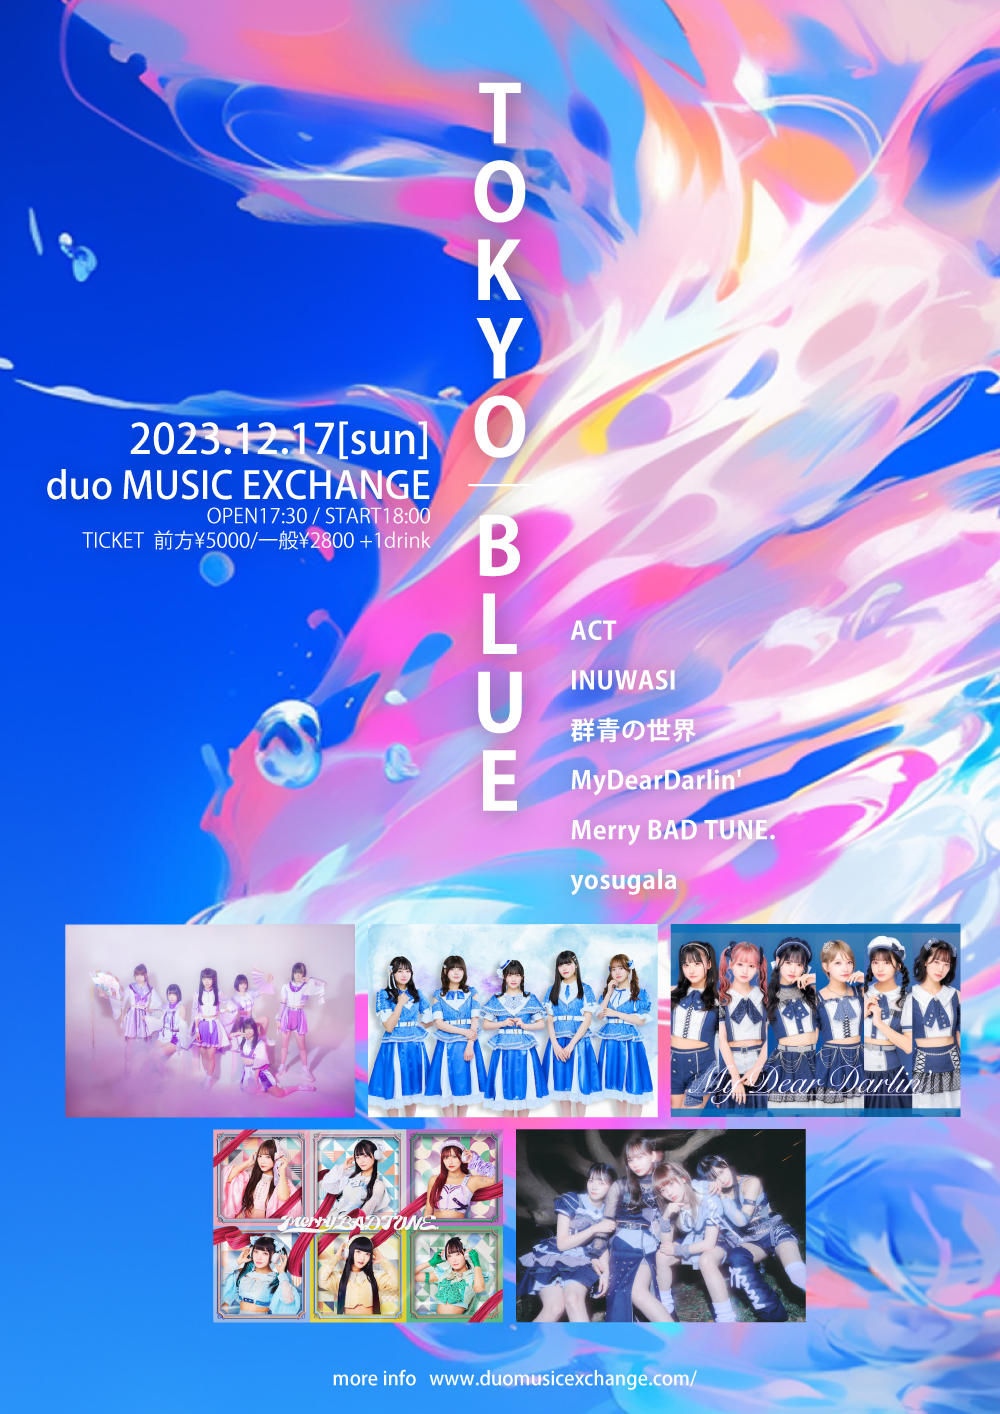 TOKYO BLUE